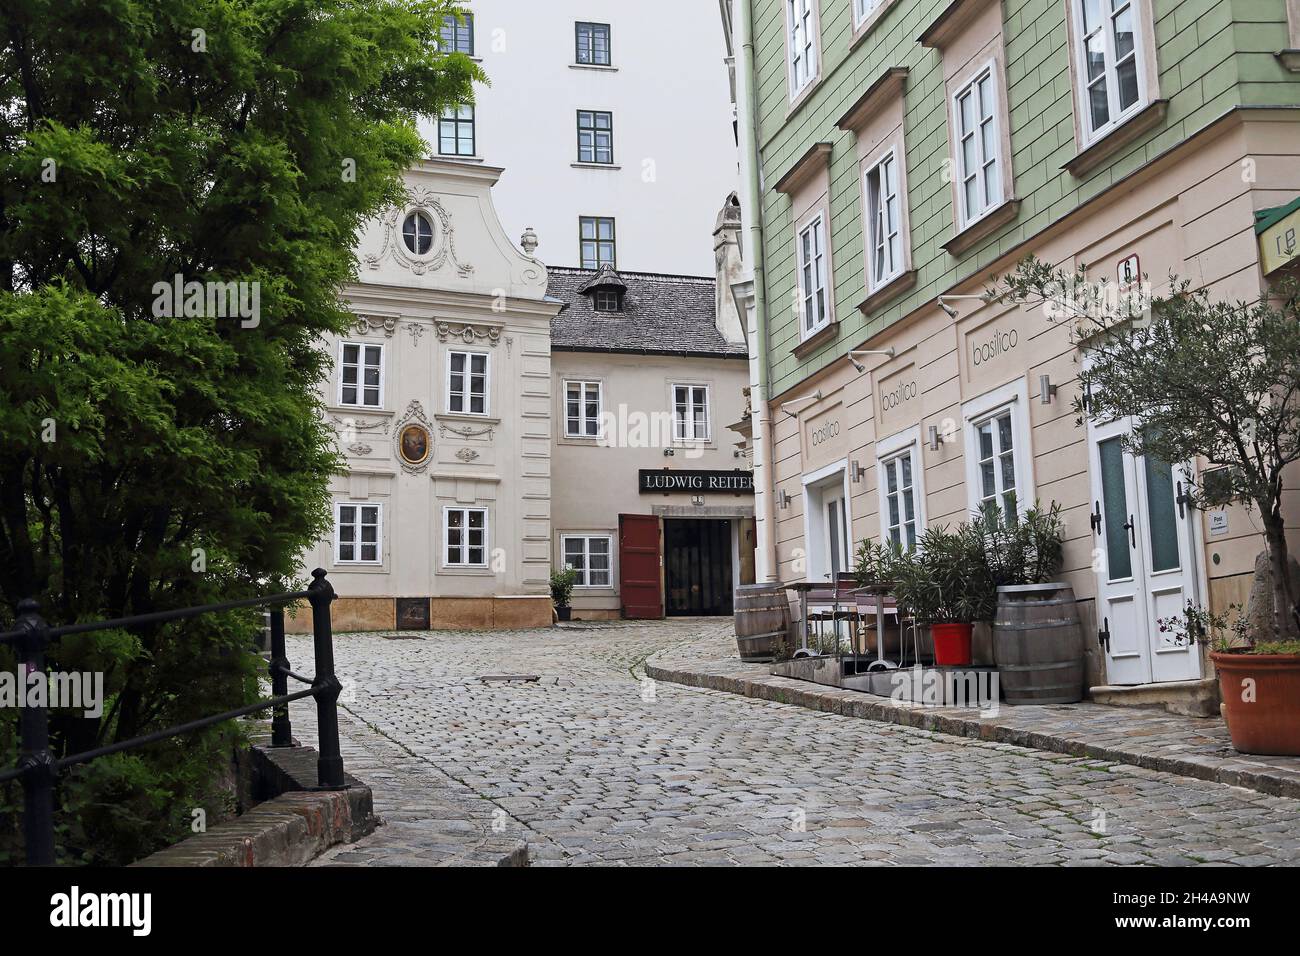 VIENNE, AUTRICHE - 16 MAI 2019 : ce sont l'une des nombreuses ruelles du quartier historique de l'Inner City qui sont bordées de vieilles maisons. Banque D'Images